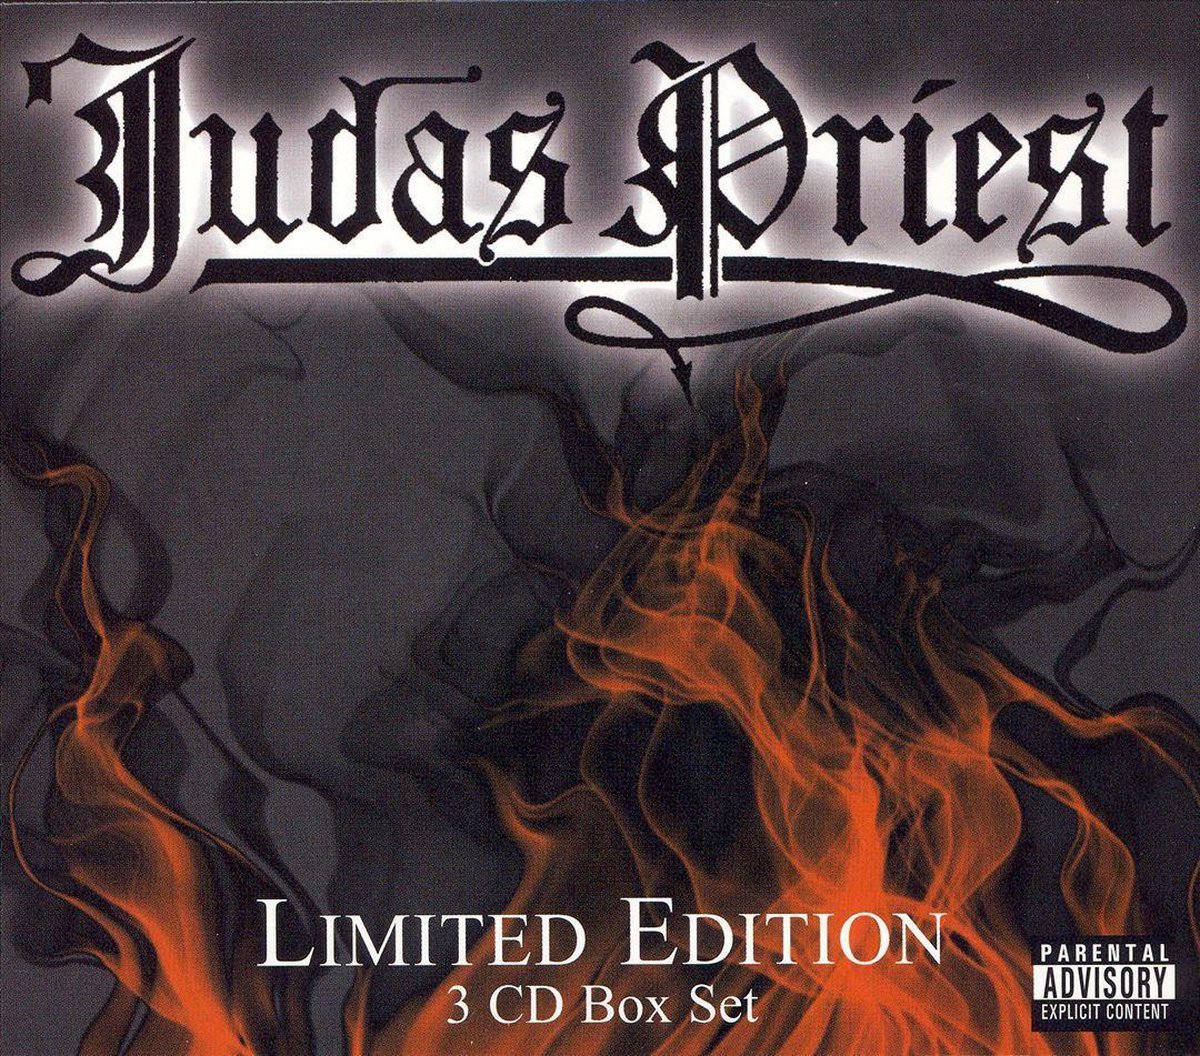 Judas Priest Box Set main product image